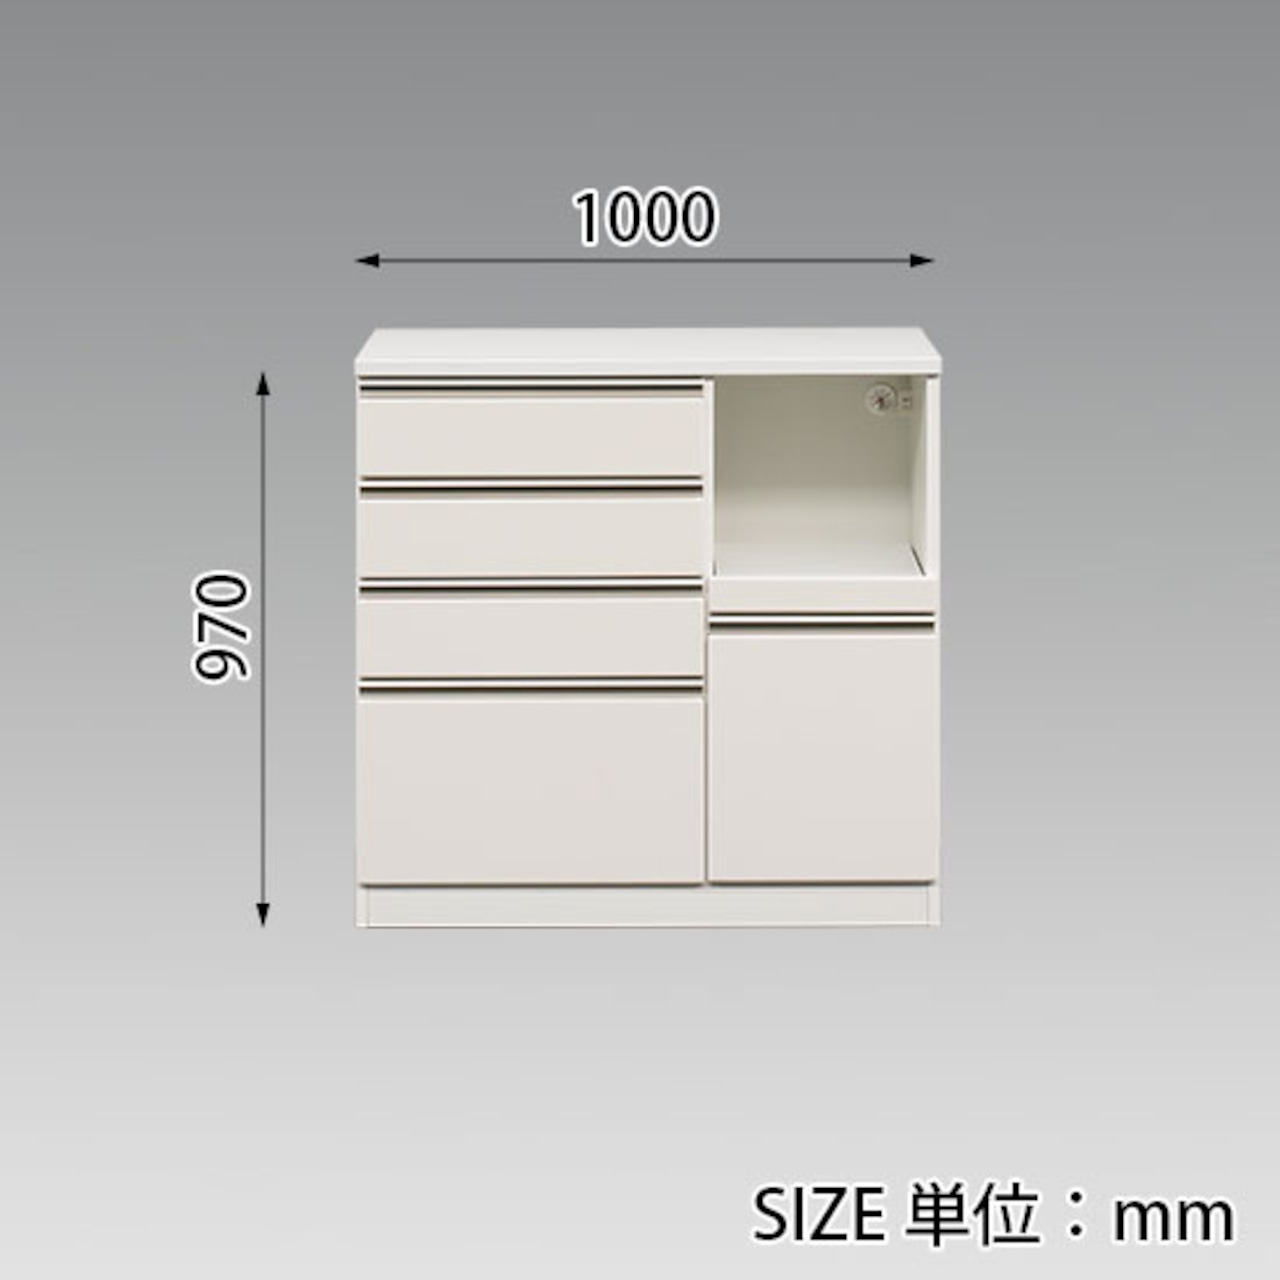 【幅100】カウンター キッチンカウンター 収納 炊飯器収納 (全2色)